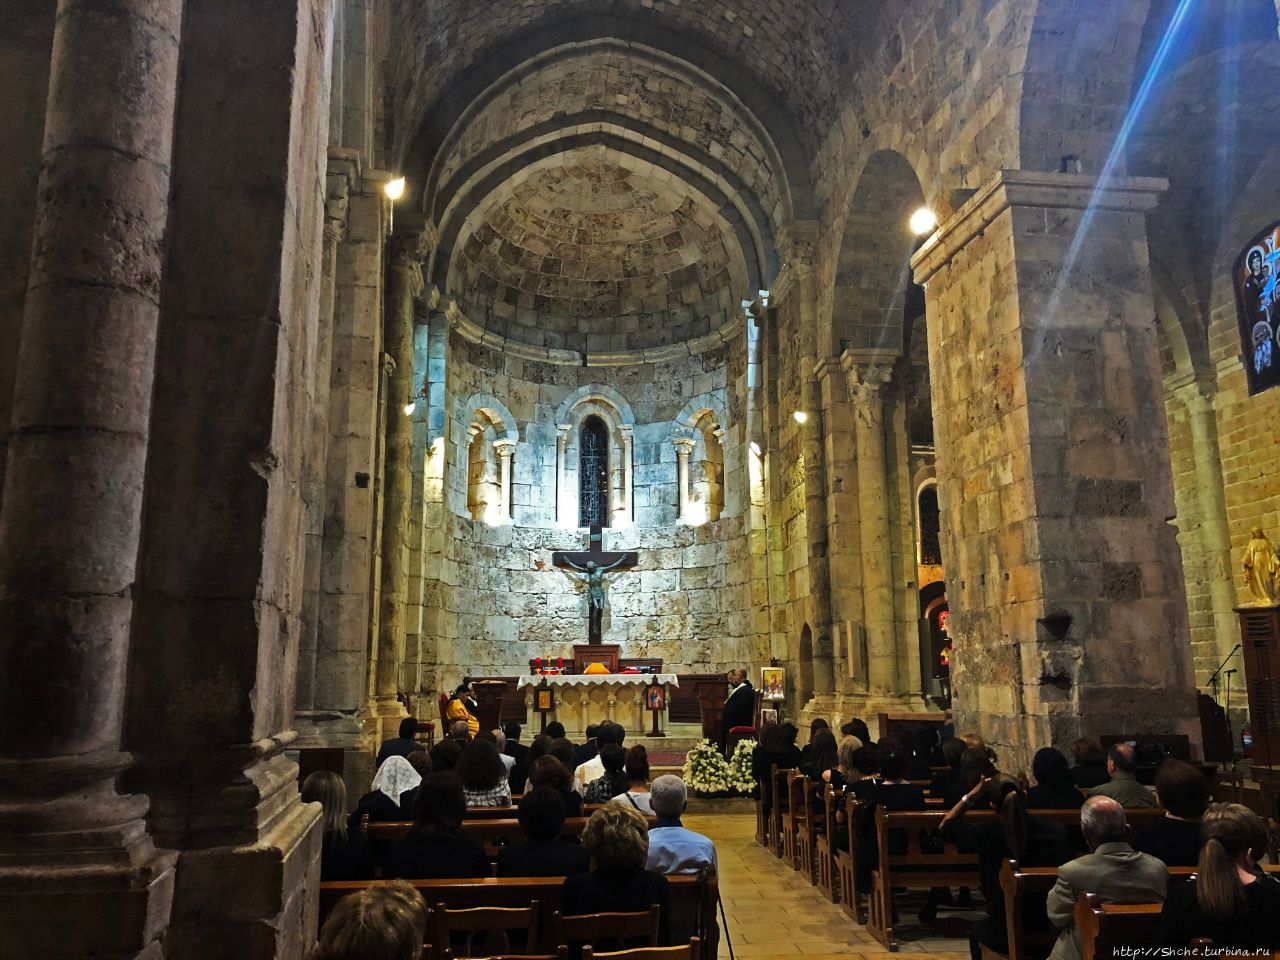 Церковь святого Иоанна Крестителя Библ, Ливан